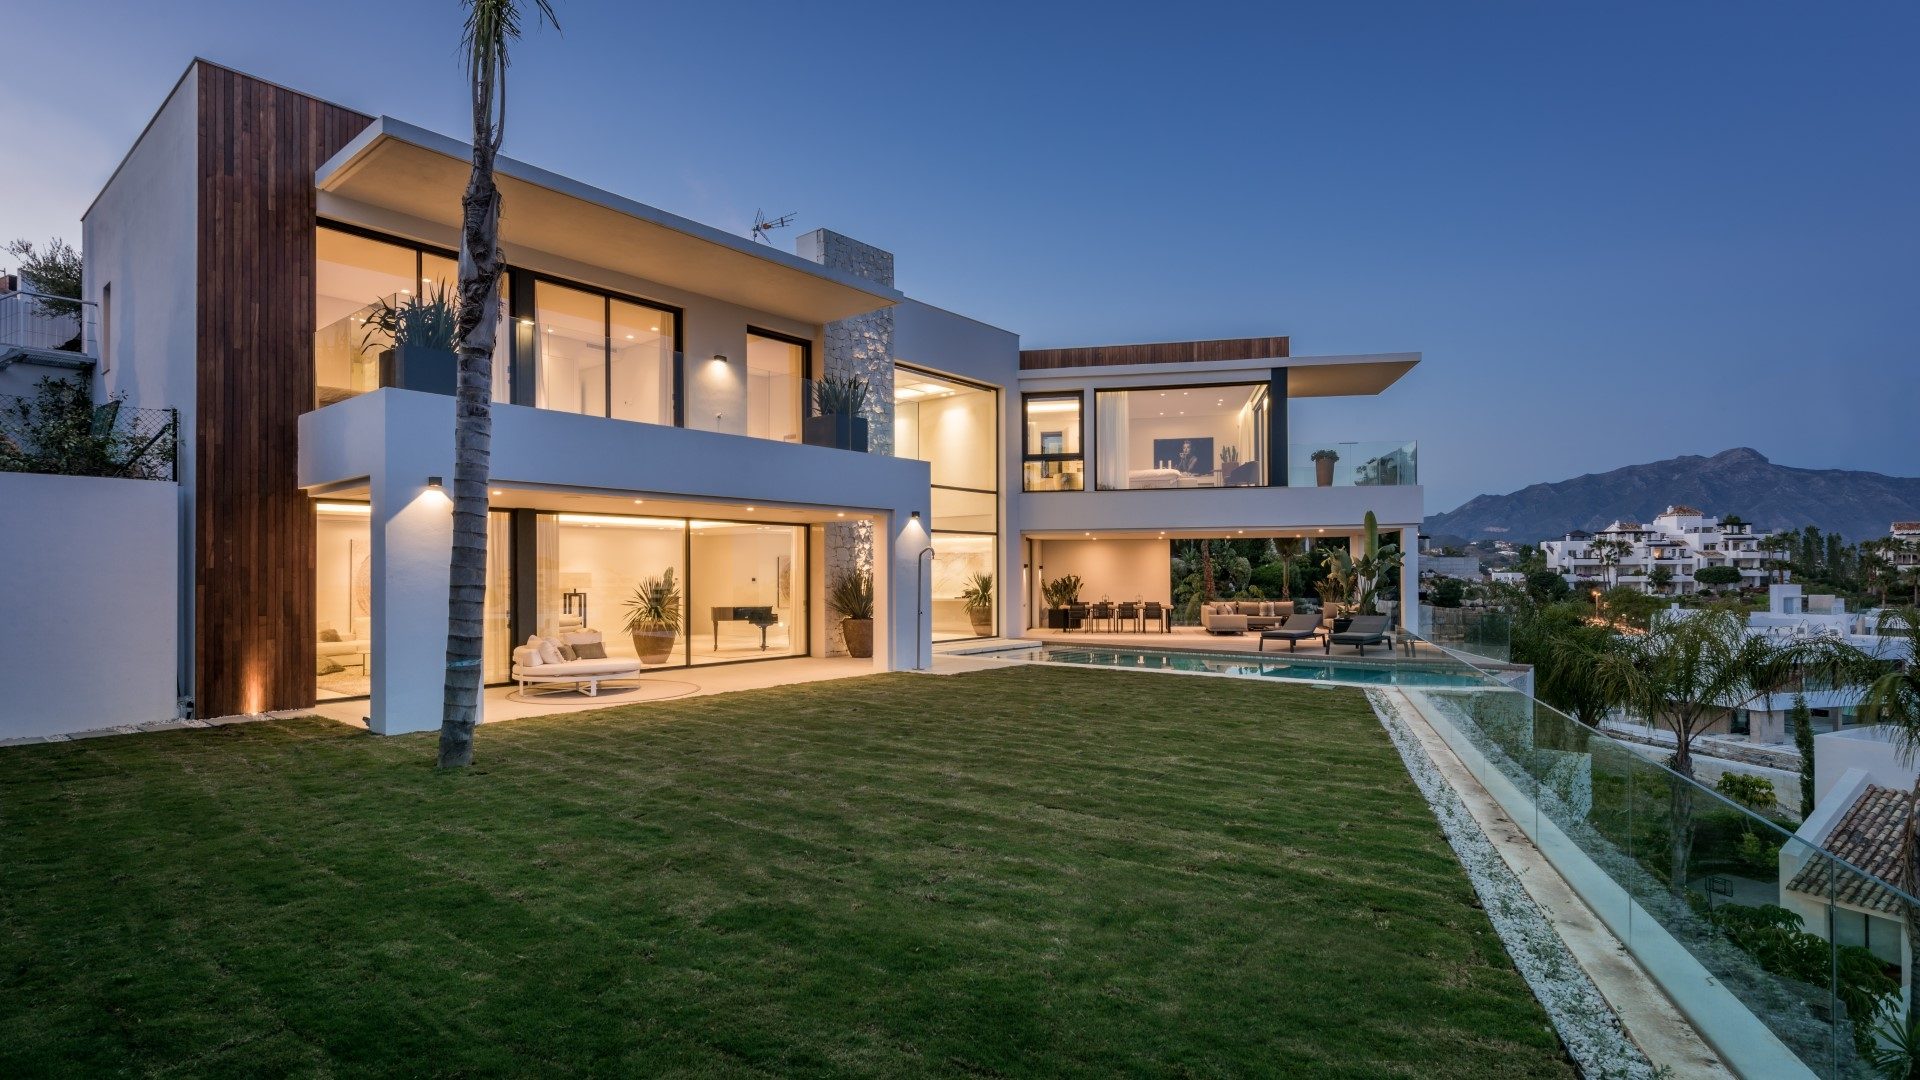 La Alqueria – luxury villa lifestyle in Benahavis